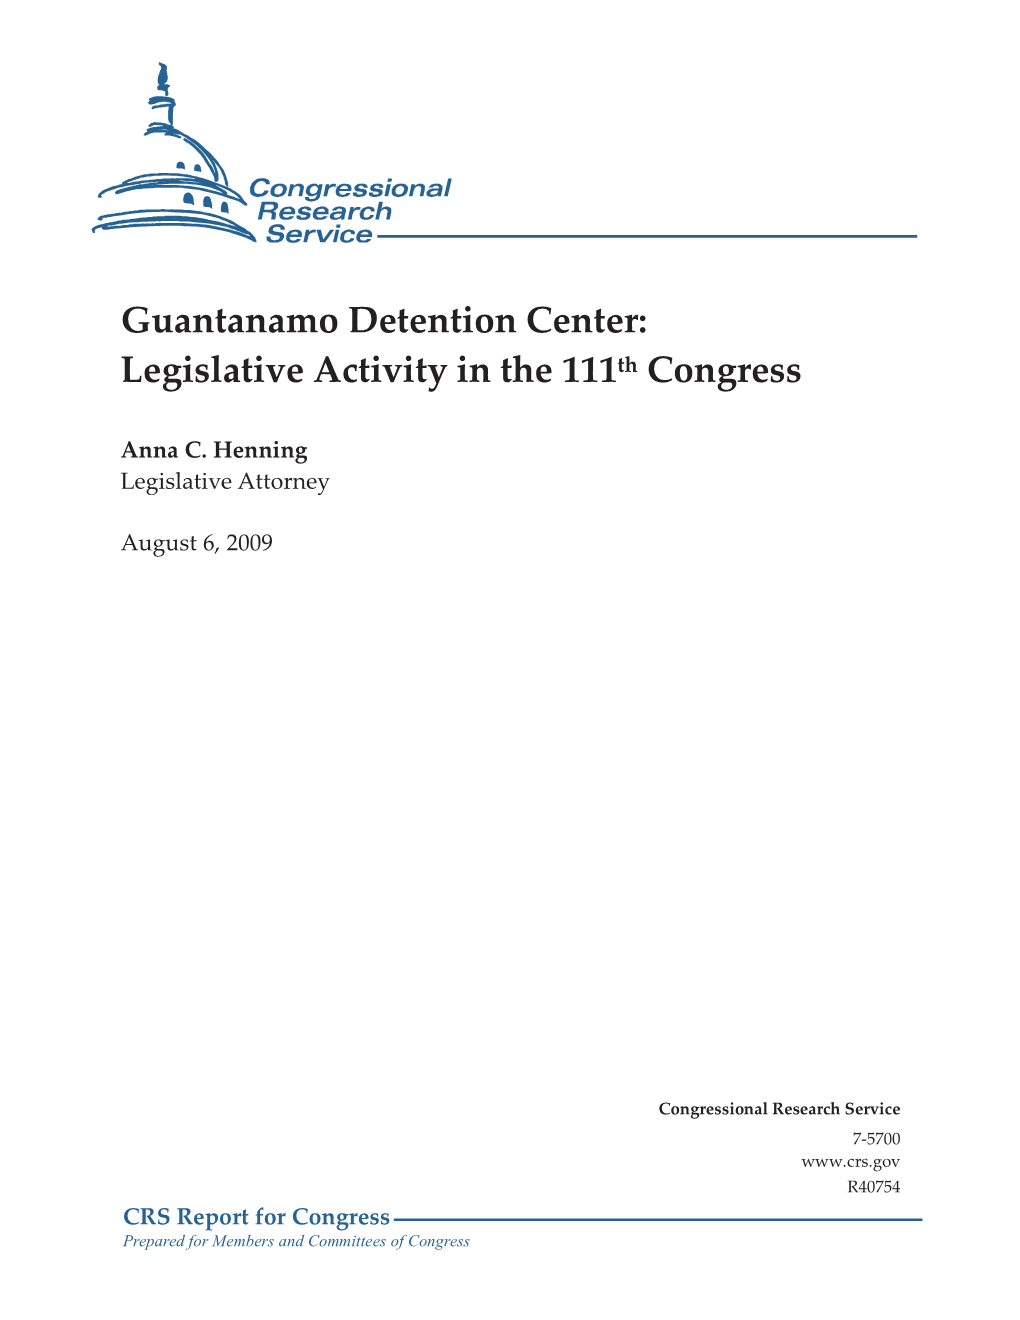 Guantanamo Detention Center: Legislative Activity in the 111Th Congress